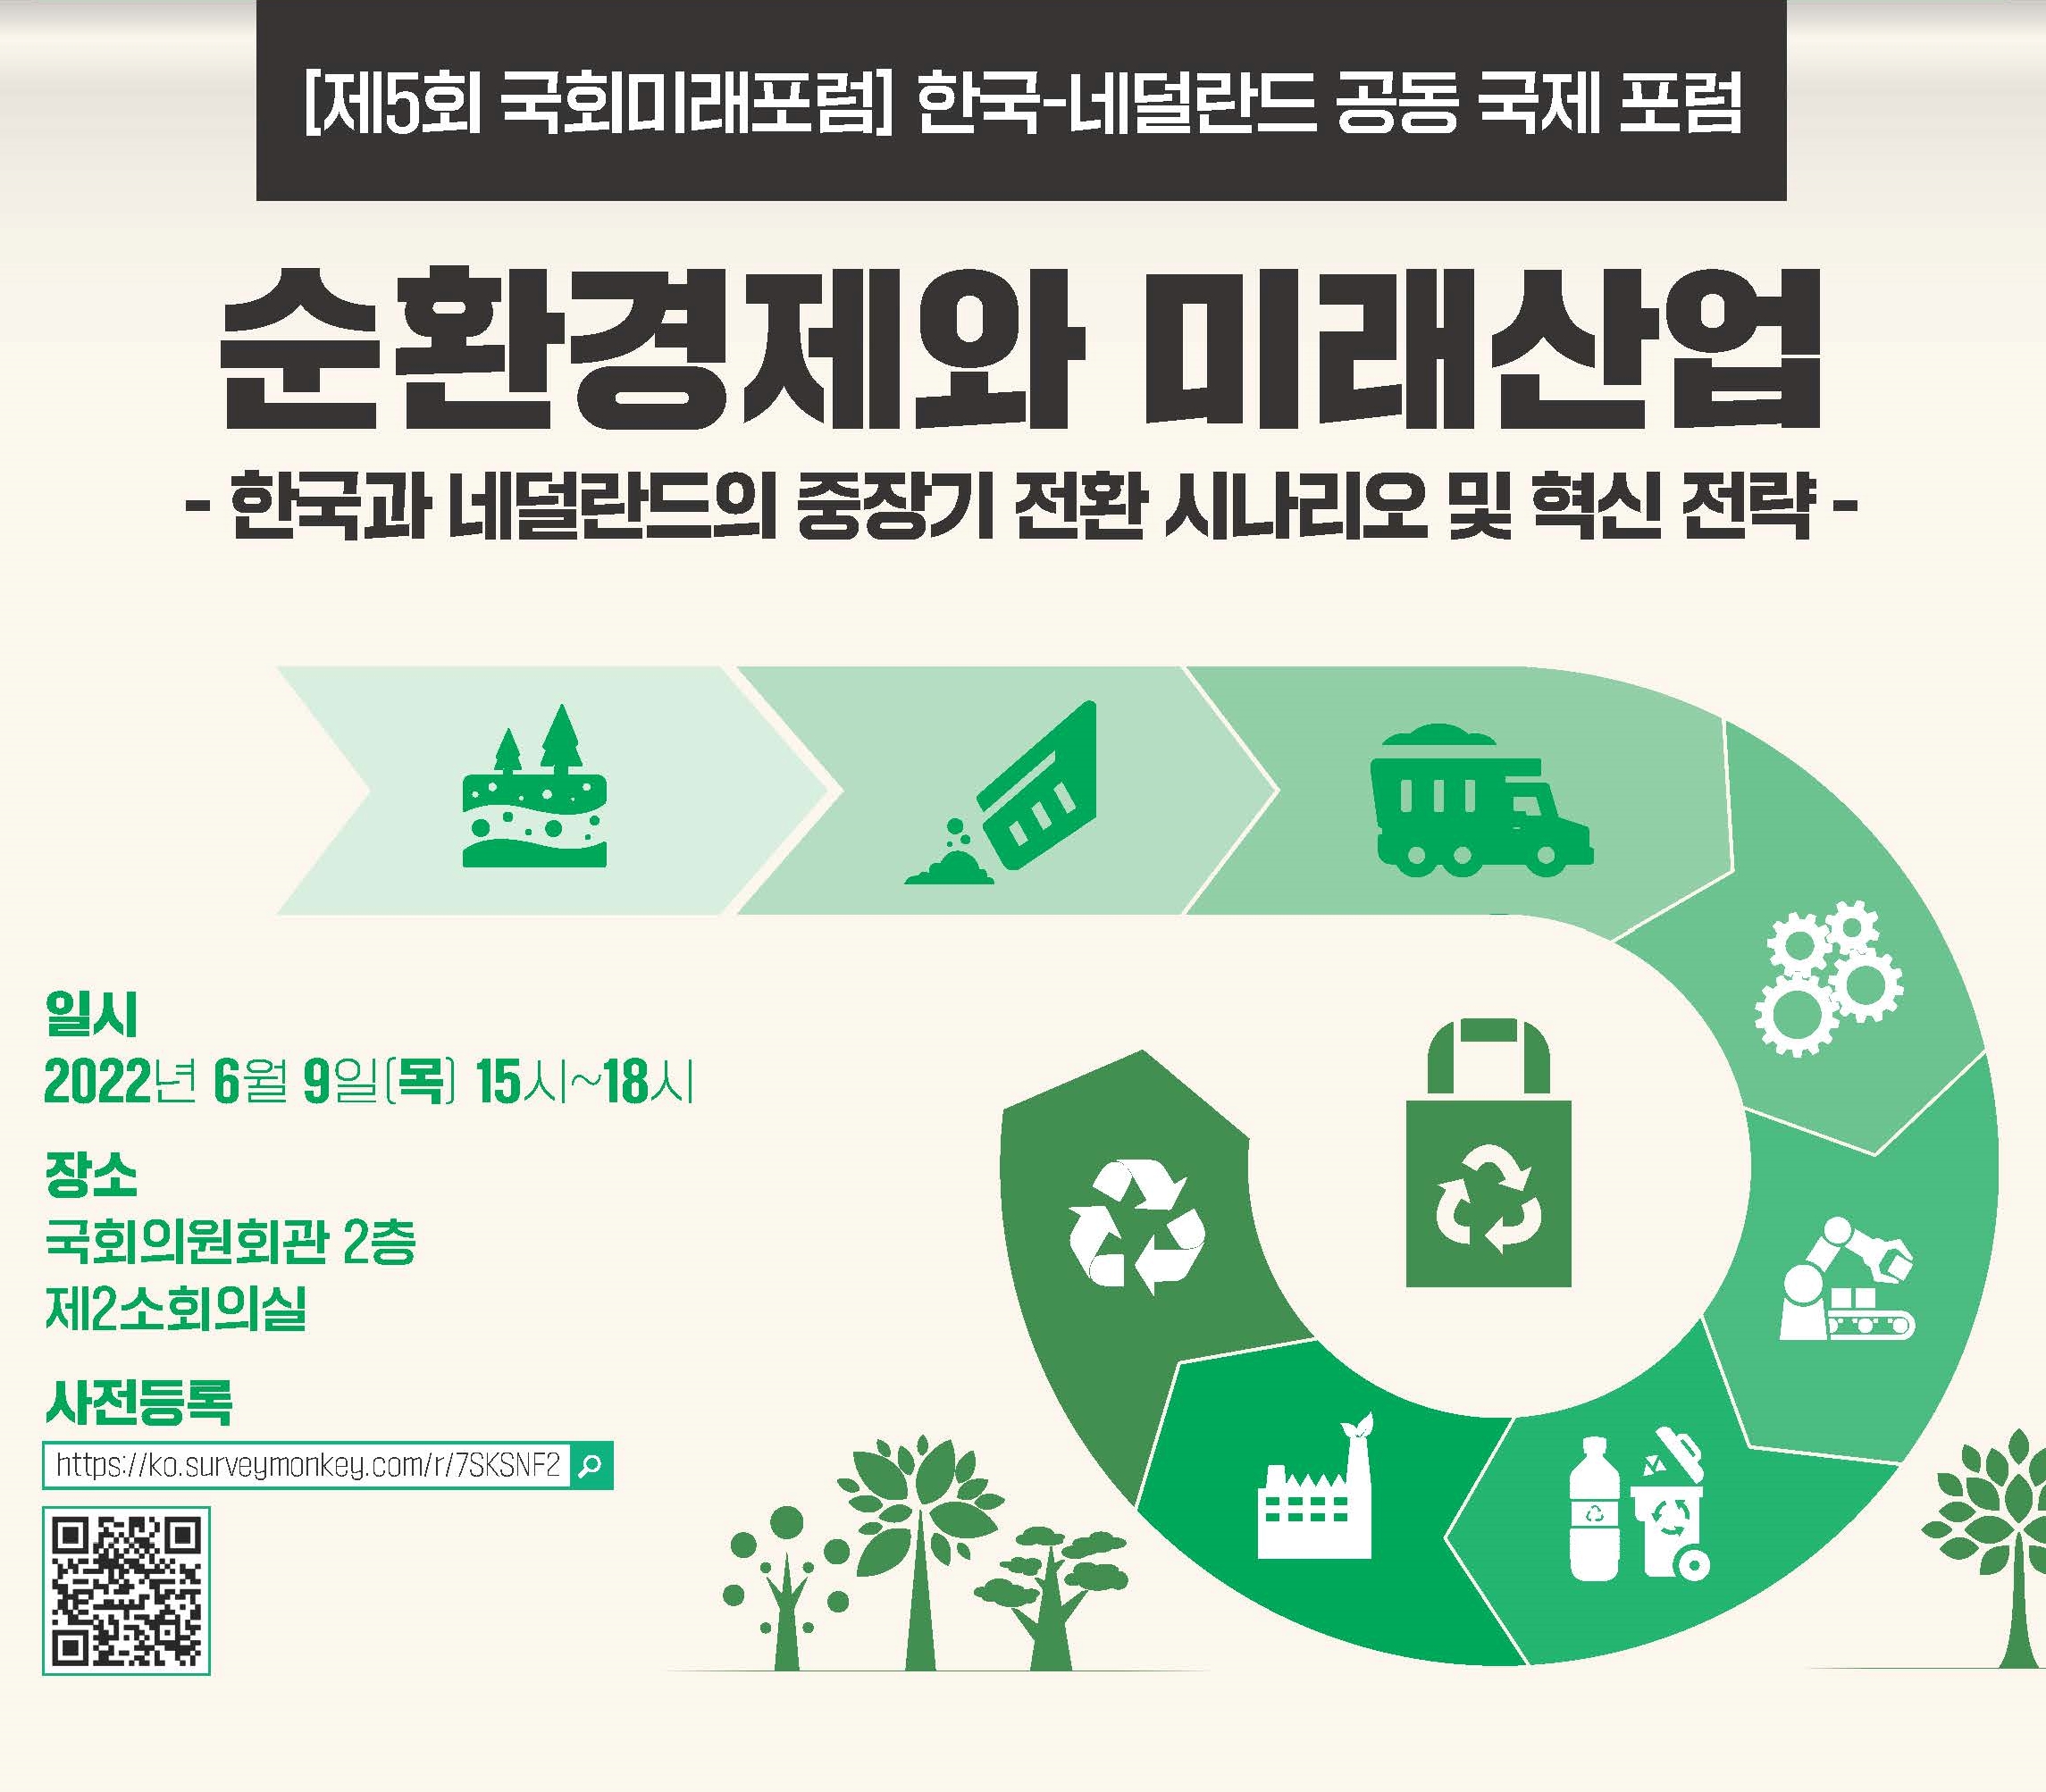 제5회 국회미래포럼: 순환경제와 미래산업_한국과 네덜란드의 중장기 전환 시나리오 및 혁신전략_2